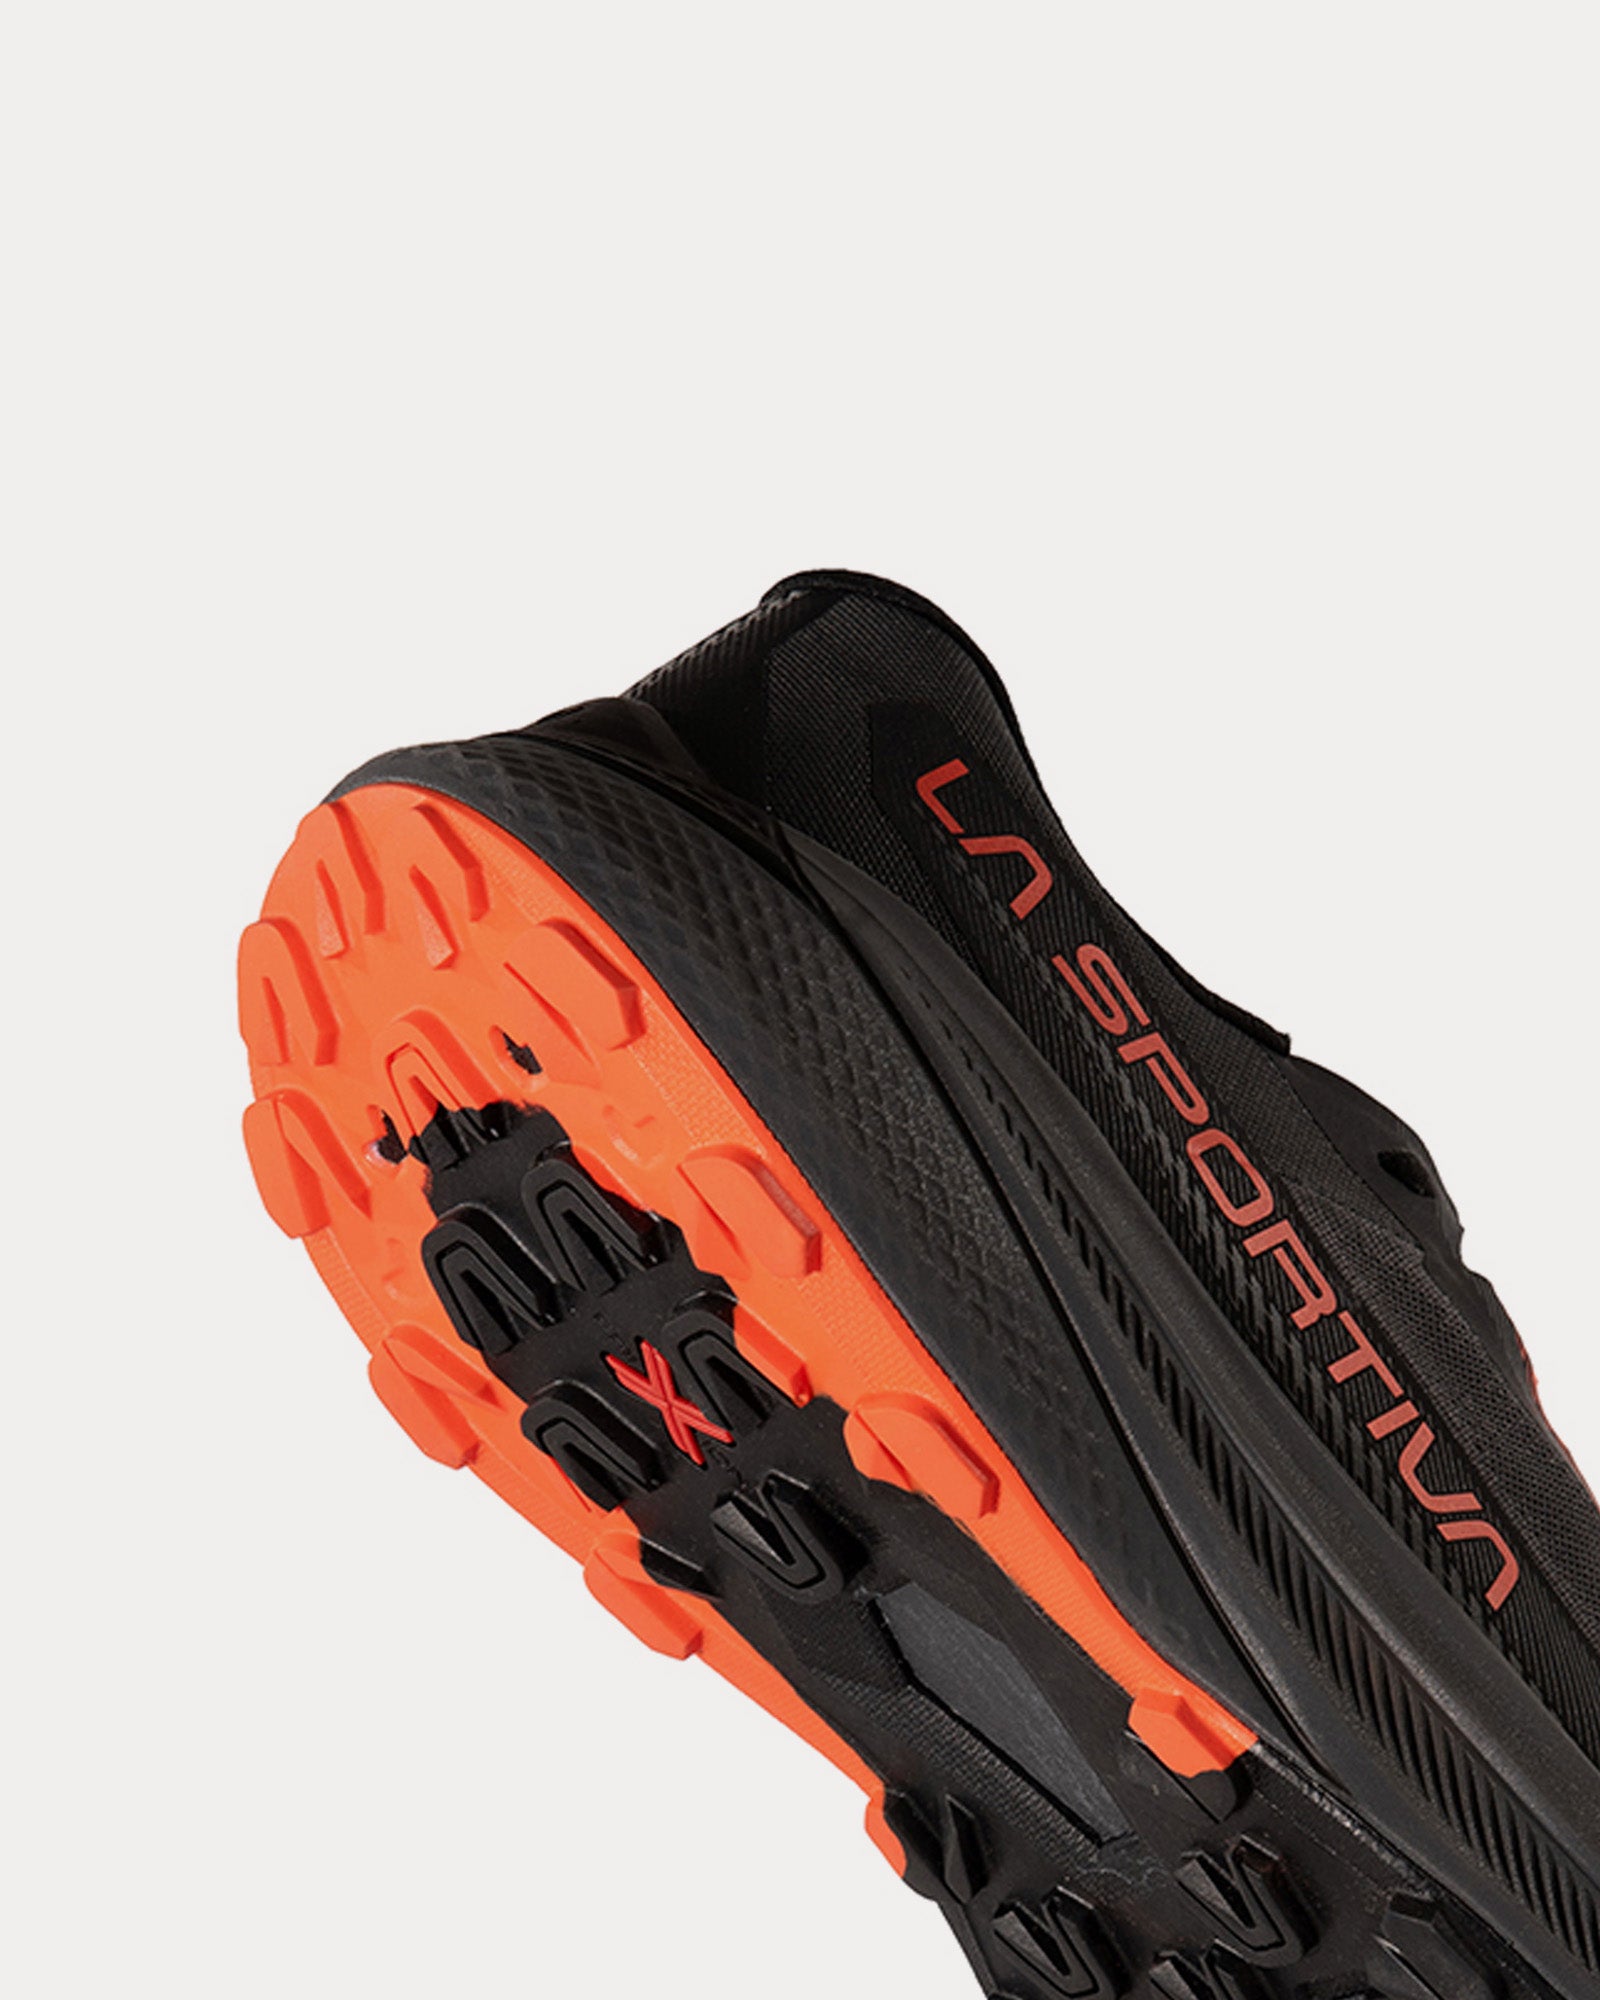 La Sportiva - Prodigio Carbon / Cherry Tomato Running Shoes